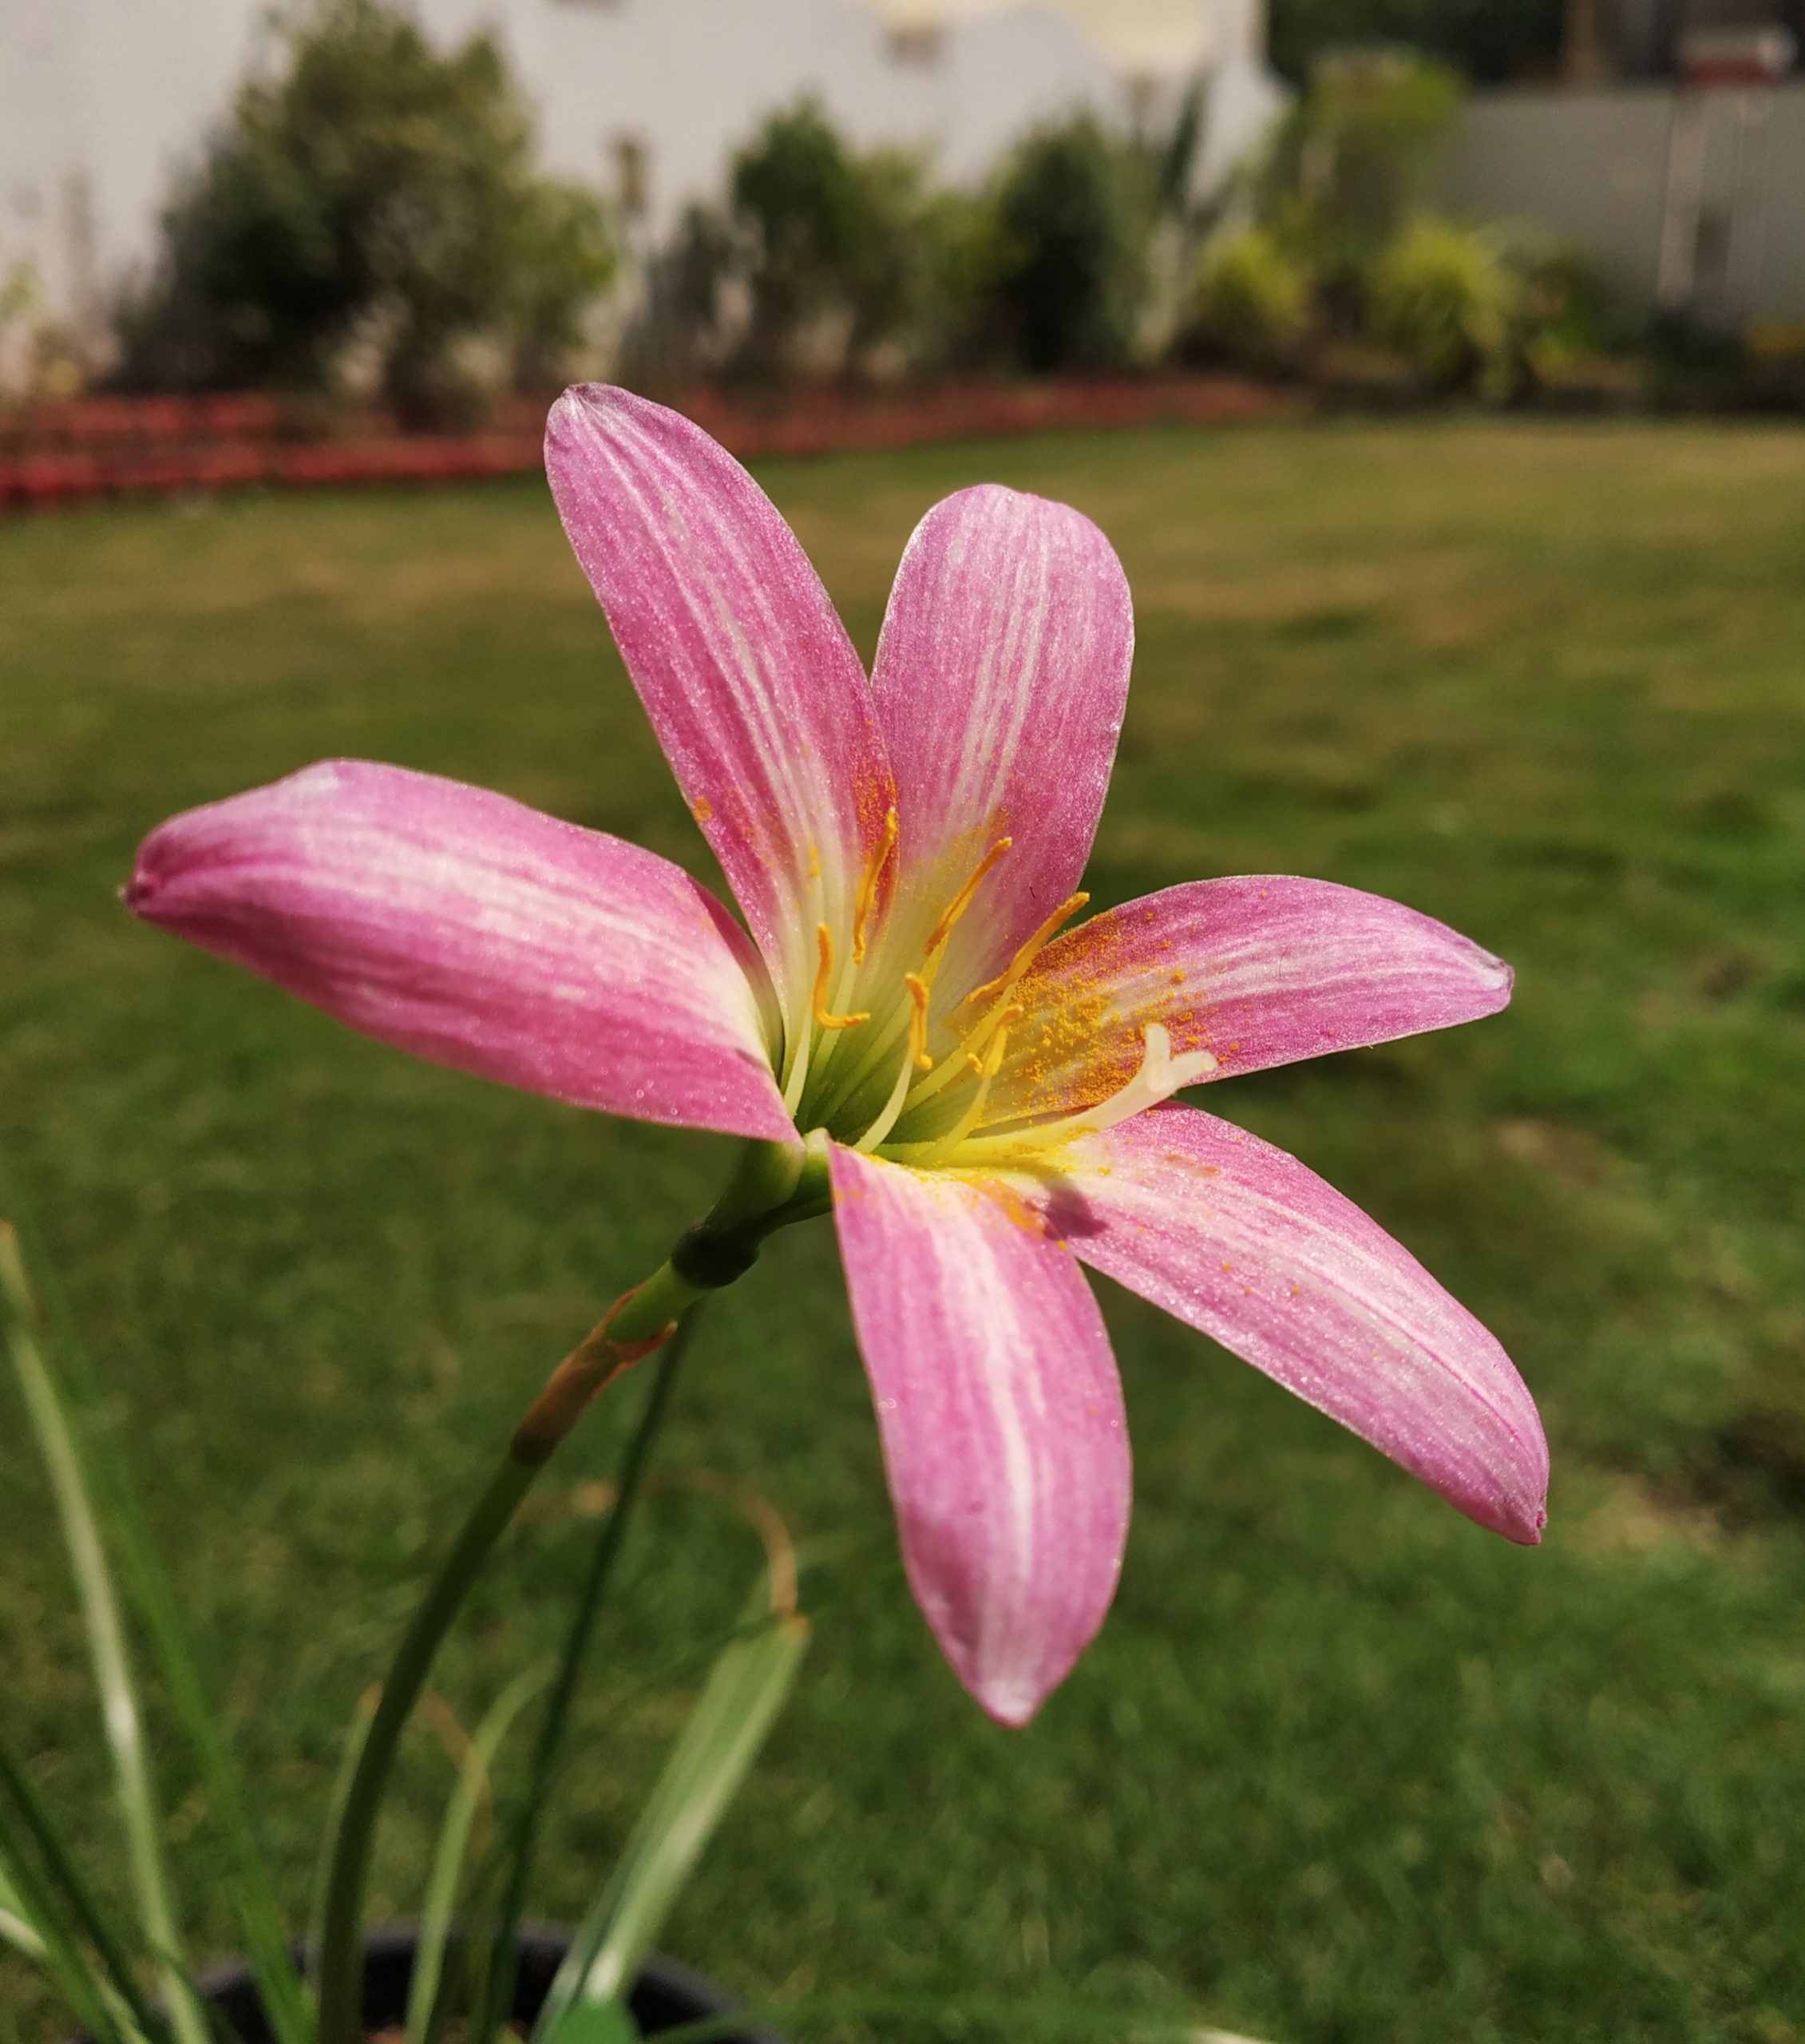 Flower in a garden